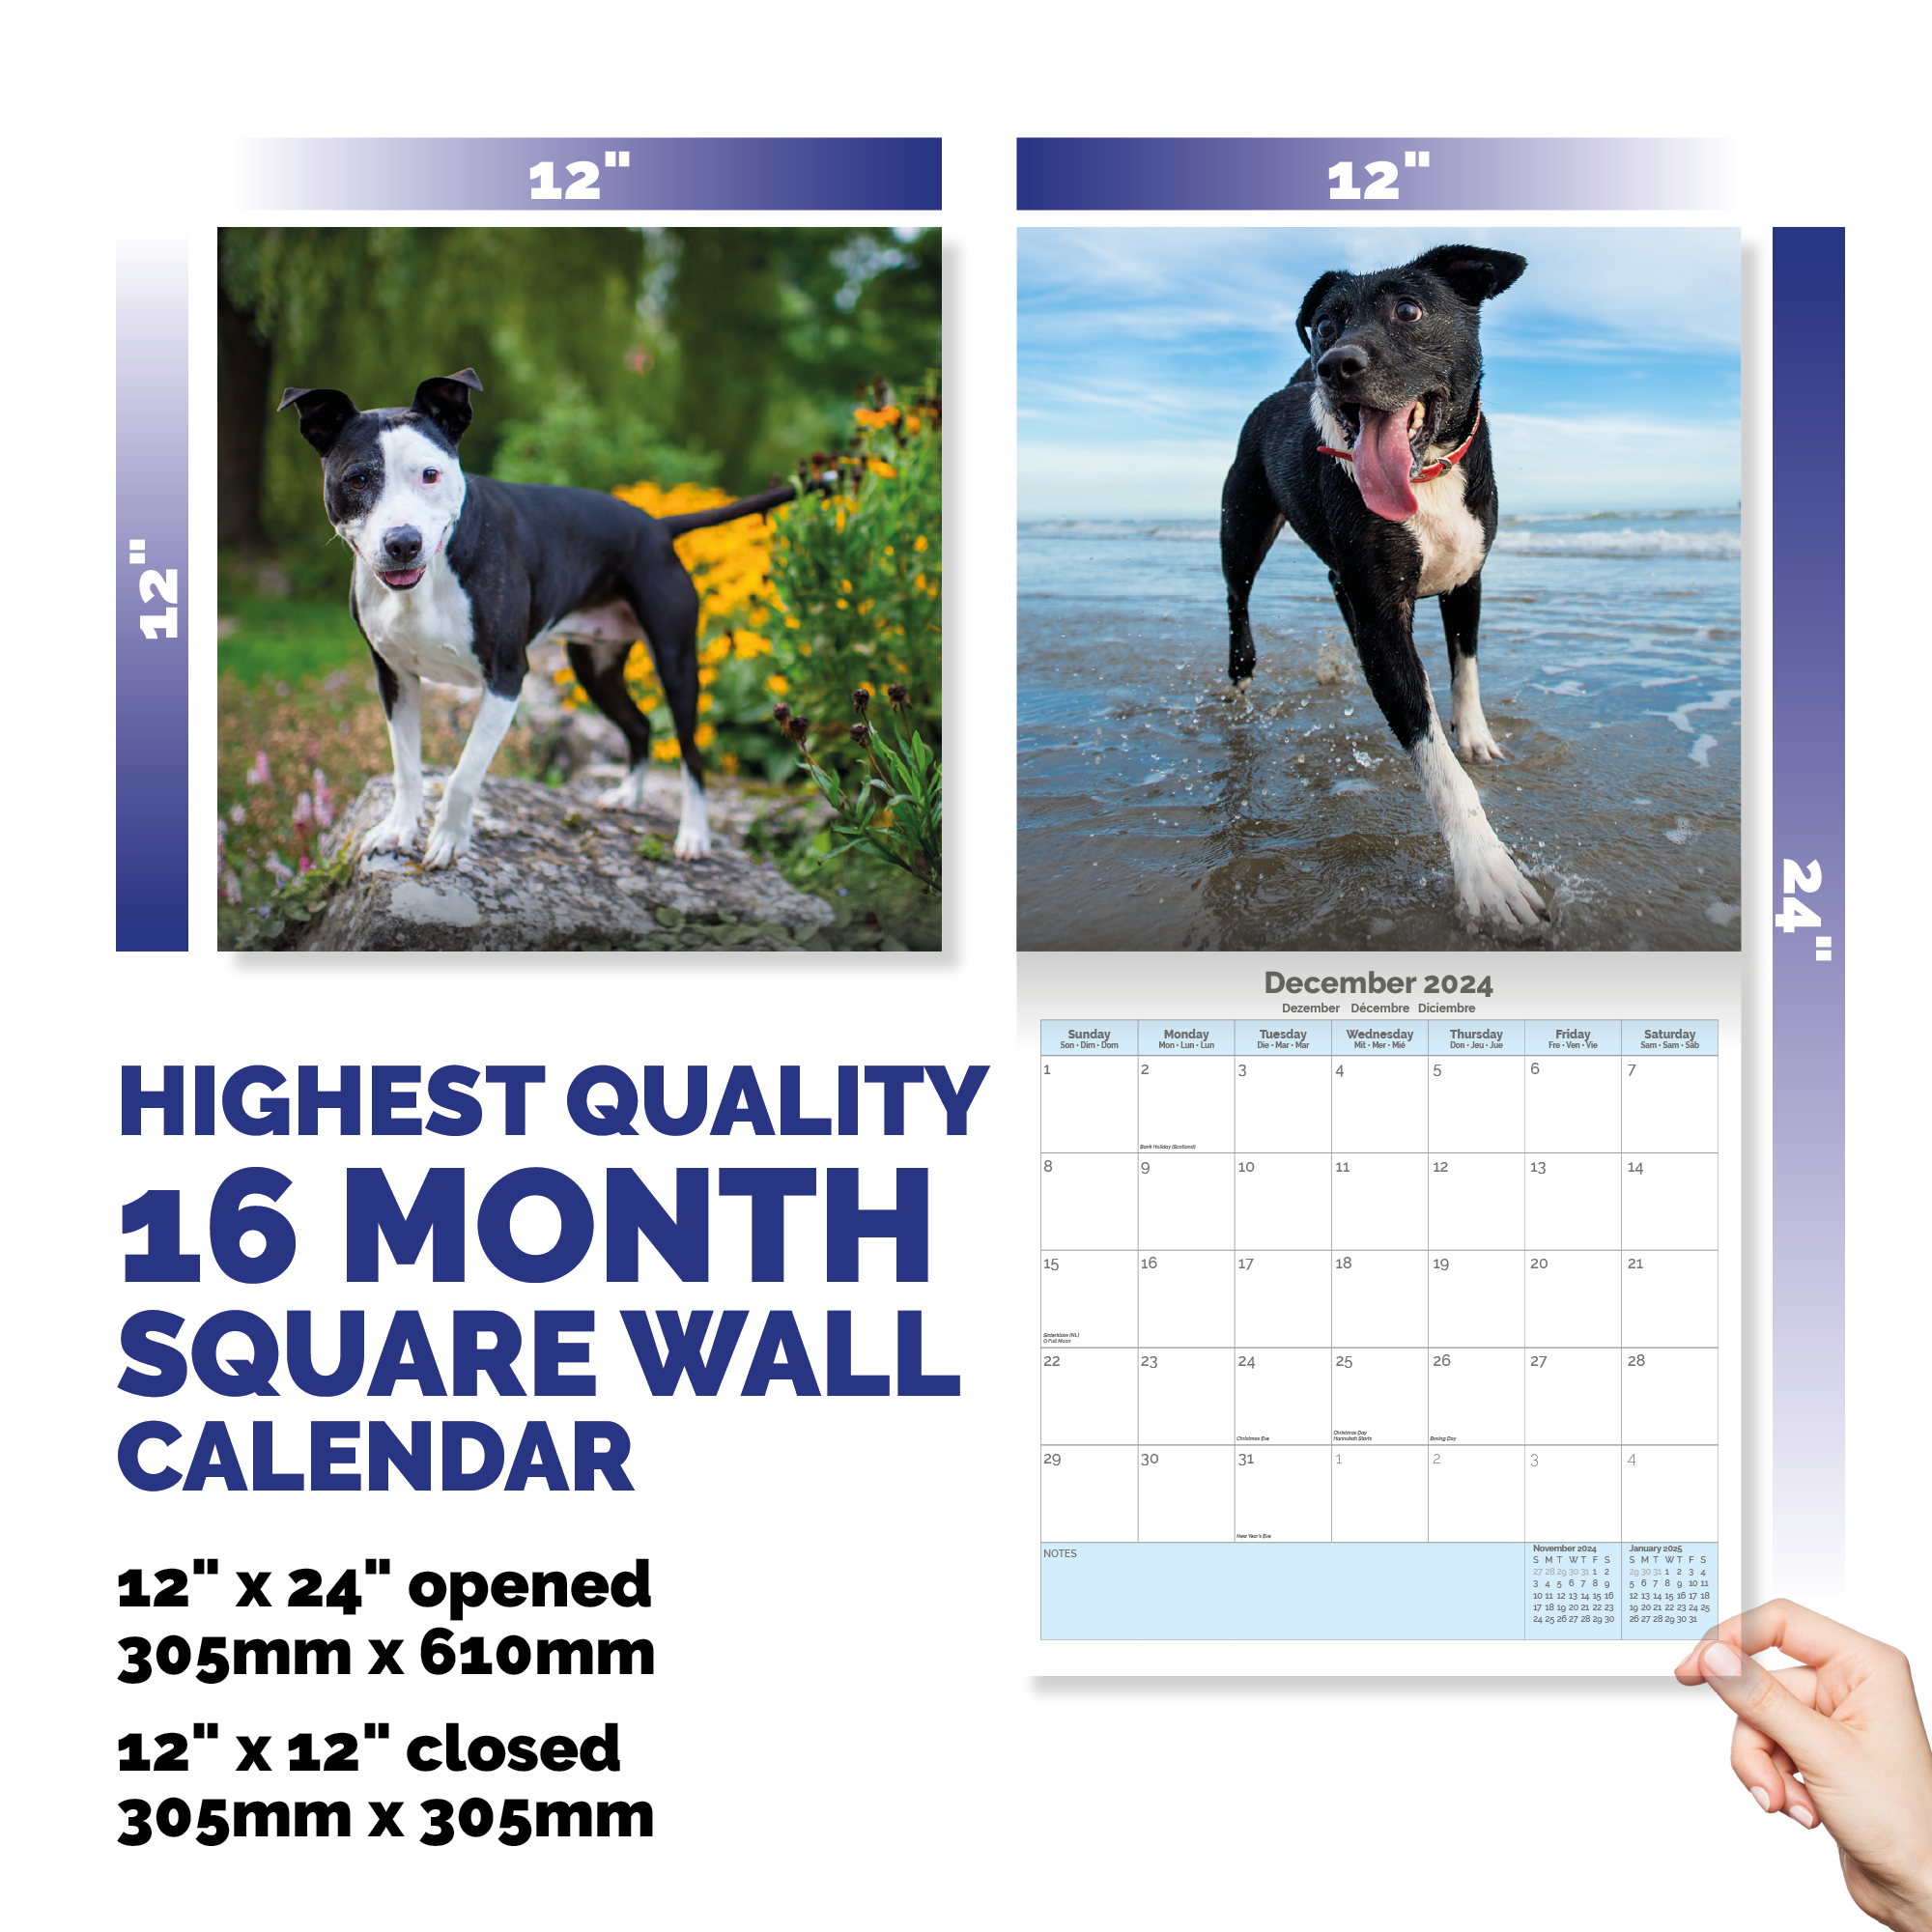 Staffordshire Bull Terrier Calendar 2024